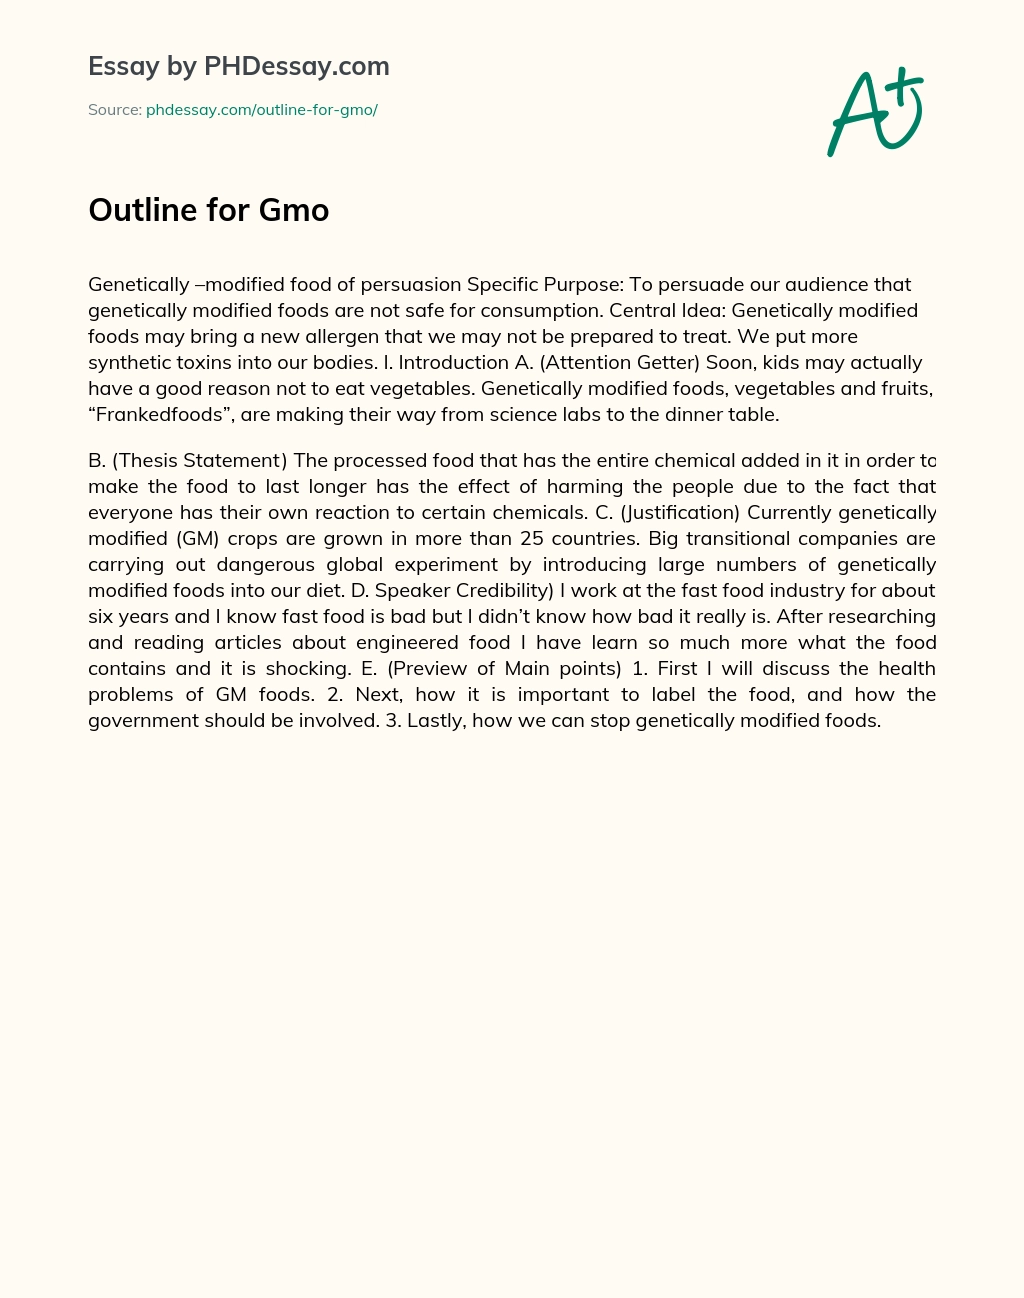 Outline for Gmo essay